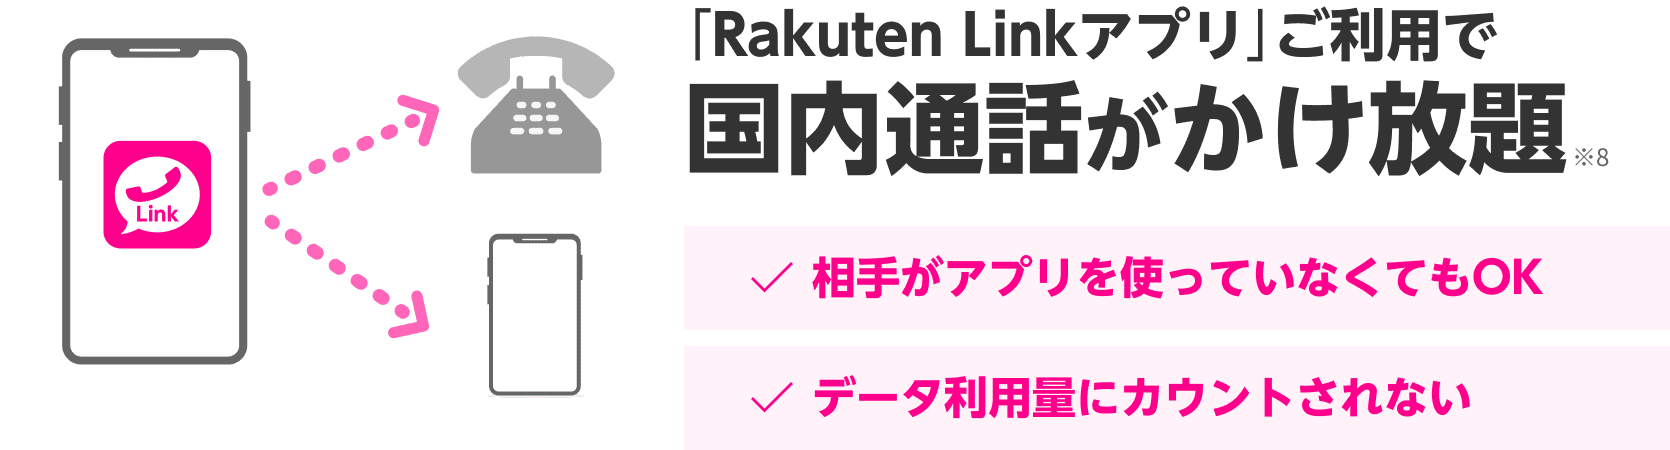 「Rakuten Link」アプリご利用で国内通話かけ放題※8